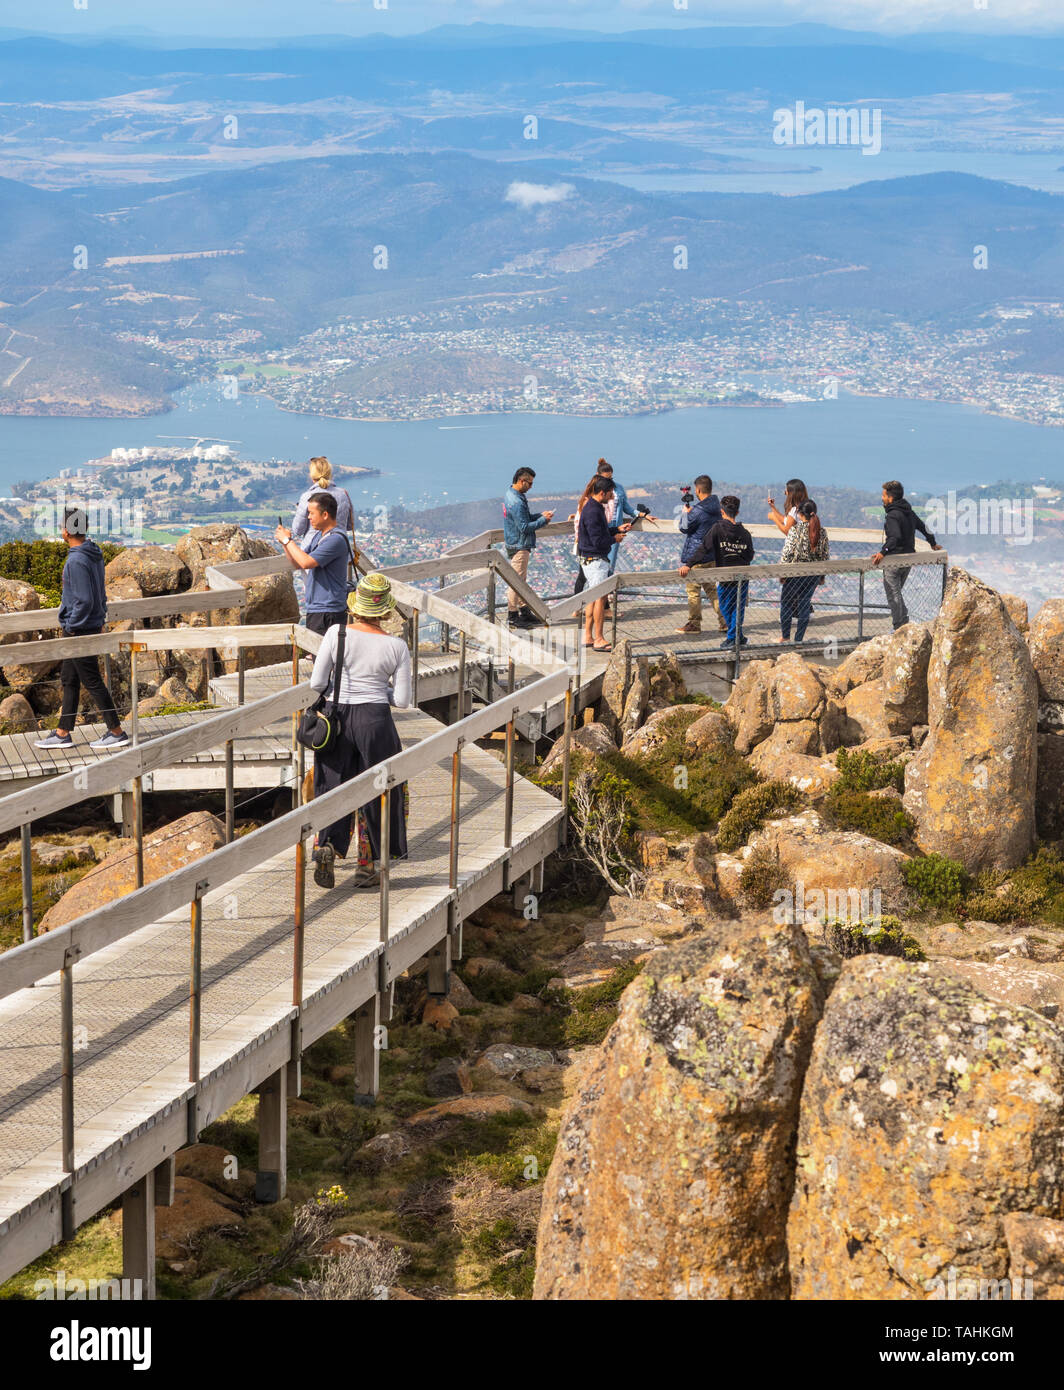 La Tasmania, Australia - 16 febbraio 2019: turisti su una passerella sulla sommità del Monte Wellington, guardando a Hobart, la città capitale della Tasmania. Foto Stock